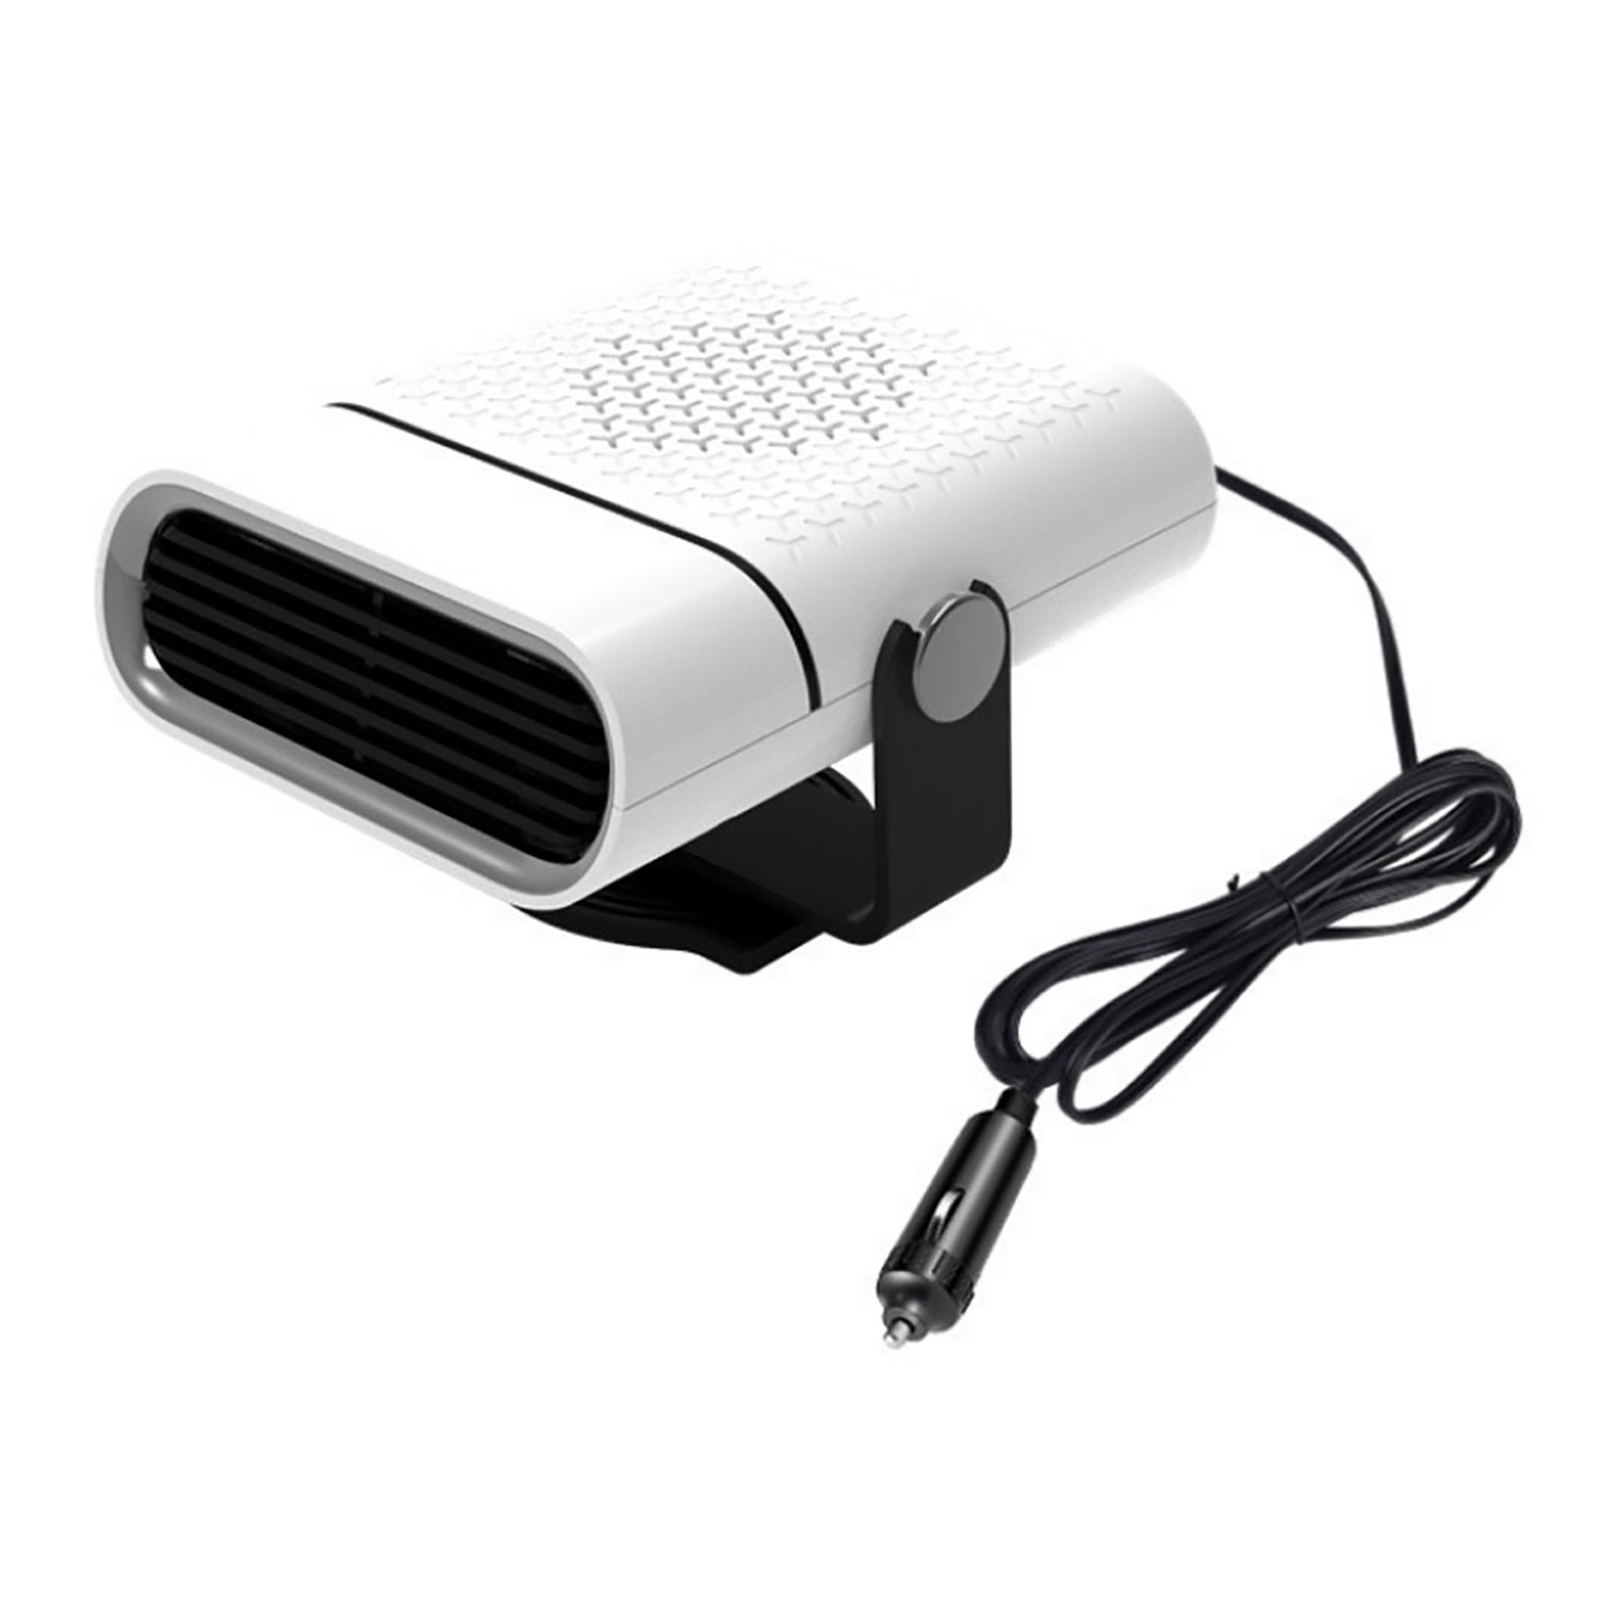 12V Car Heater Cigarette Lighter Plug Fast Heating Cooling Fan Base 360° Rotating Windshield Defroster Demister Electric Dryer